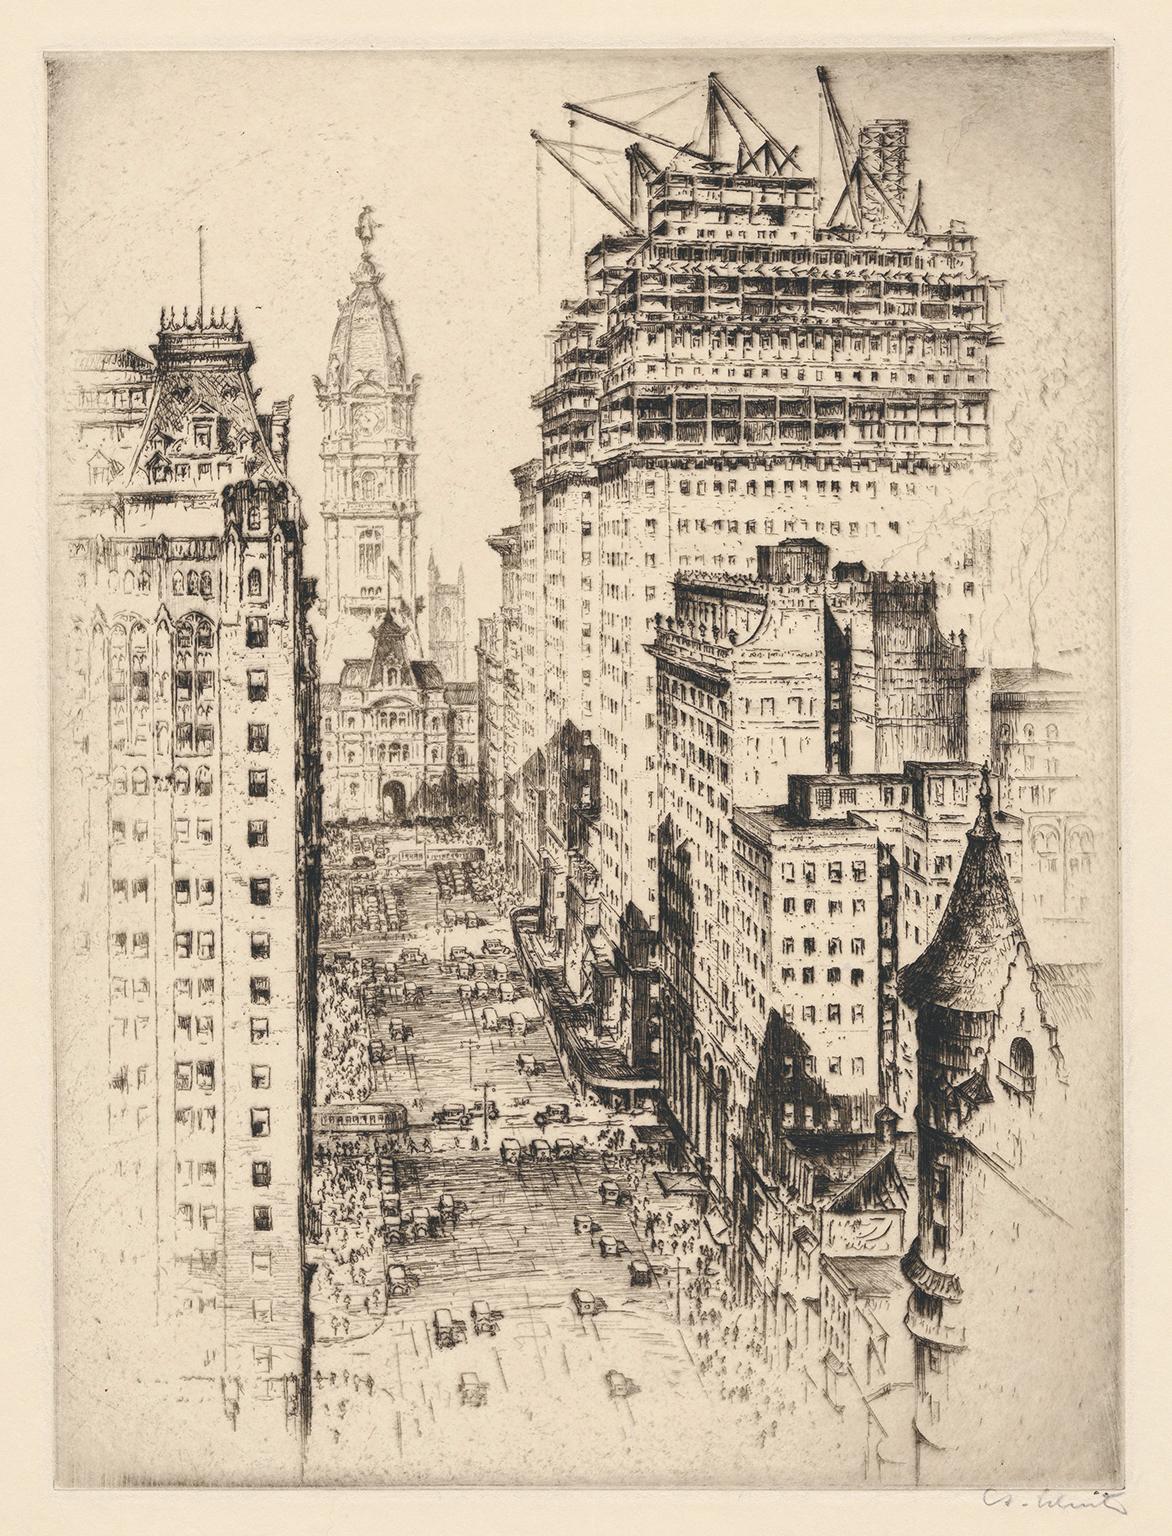 Anton Schutz Landscape Print – Philadelphia, Broad Street" - Realismus der 1920er Jahre